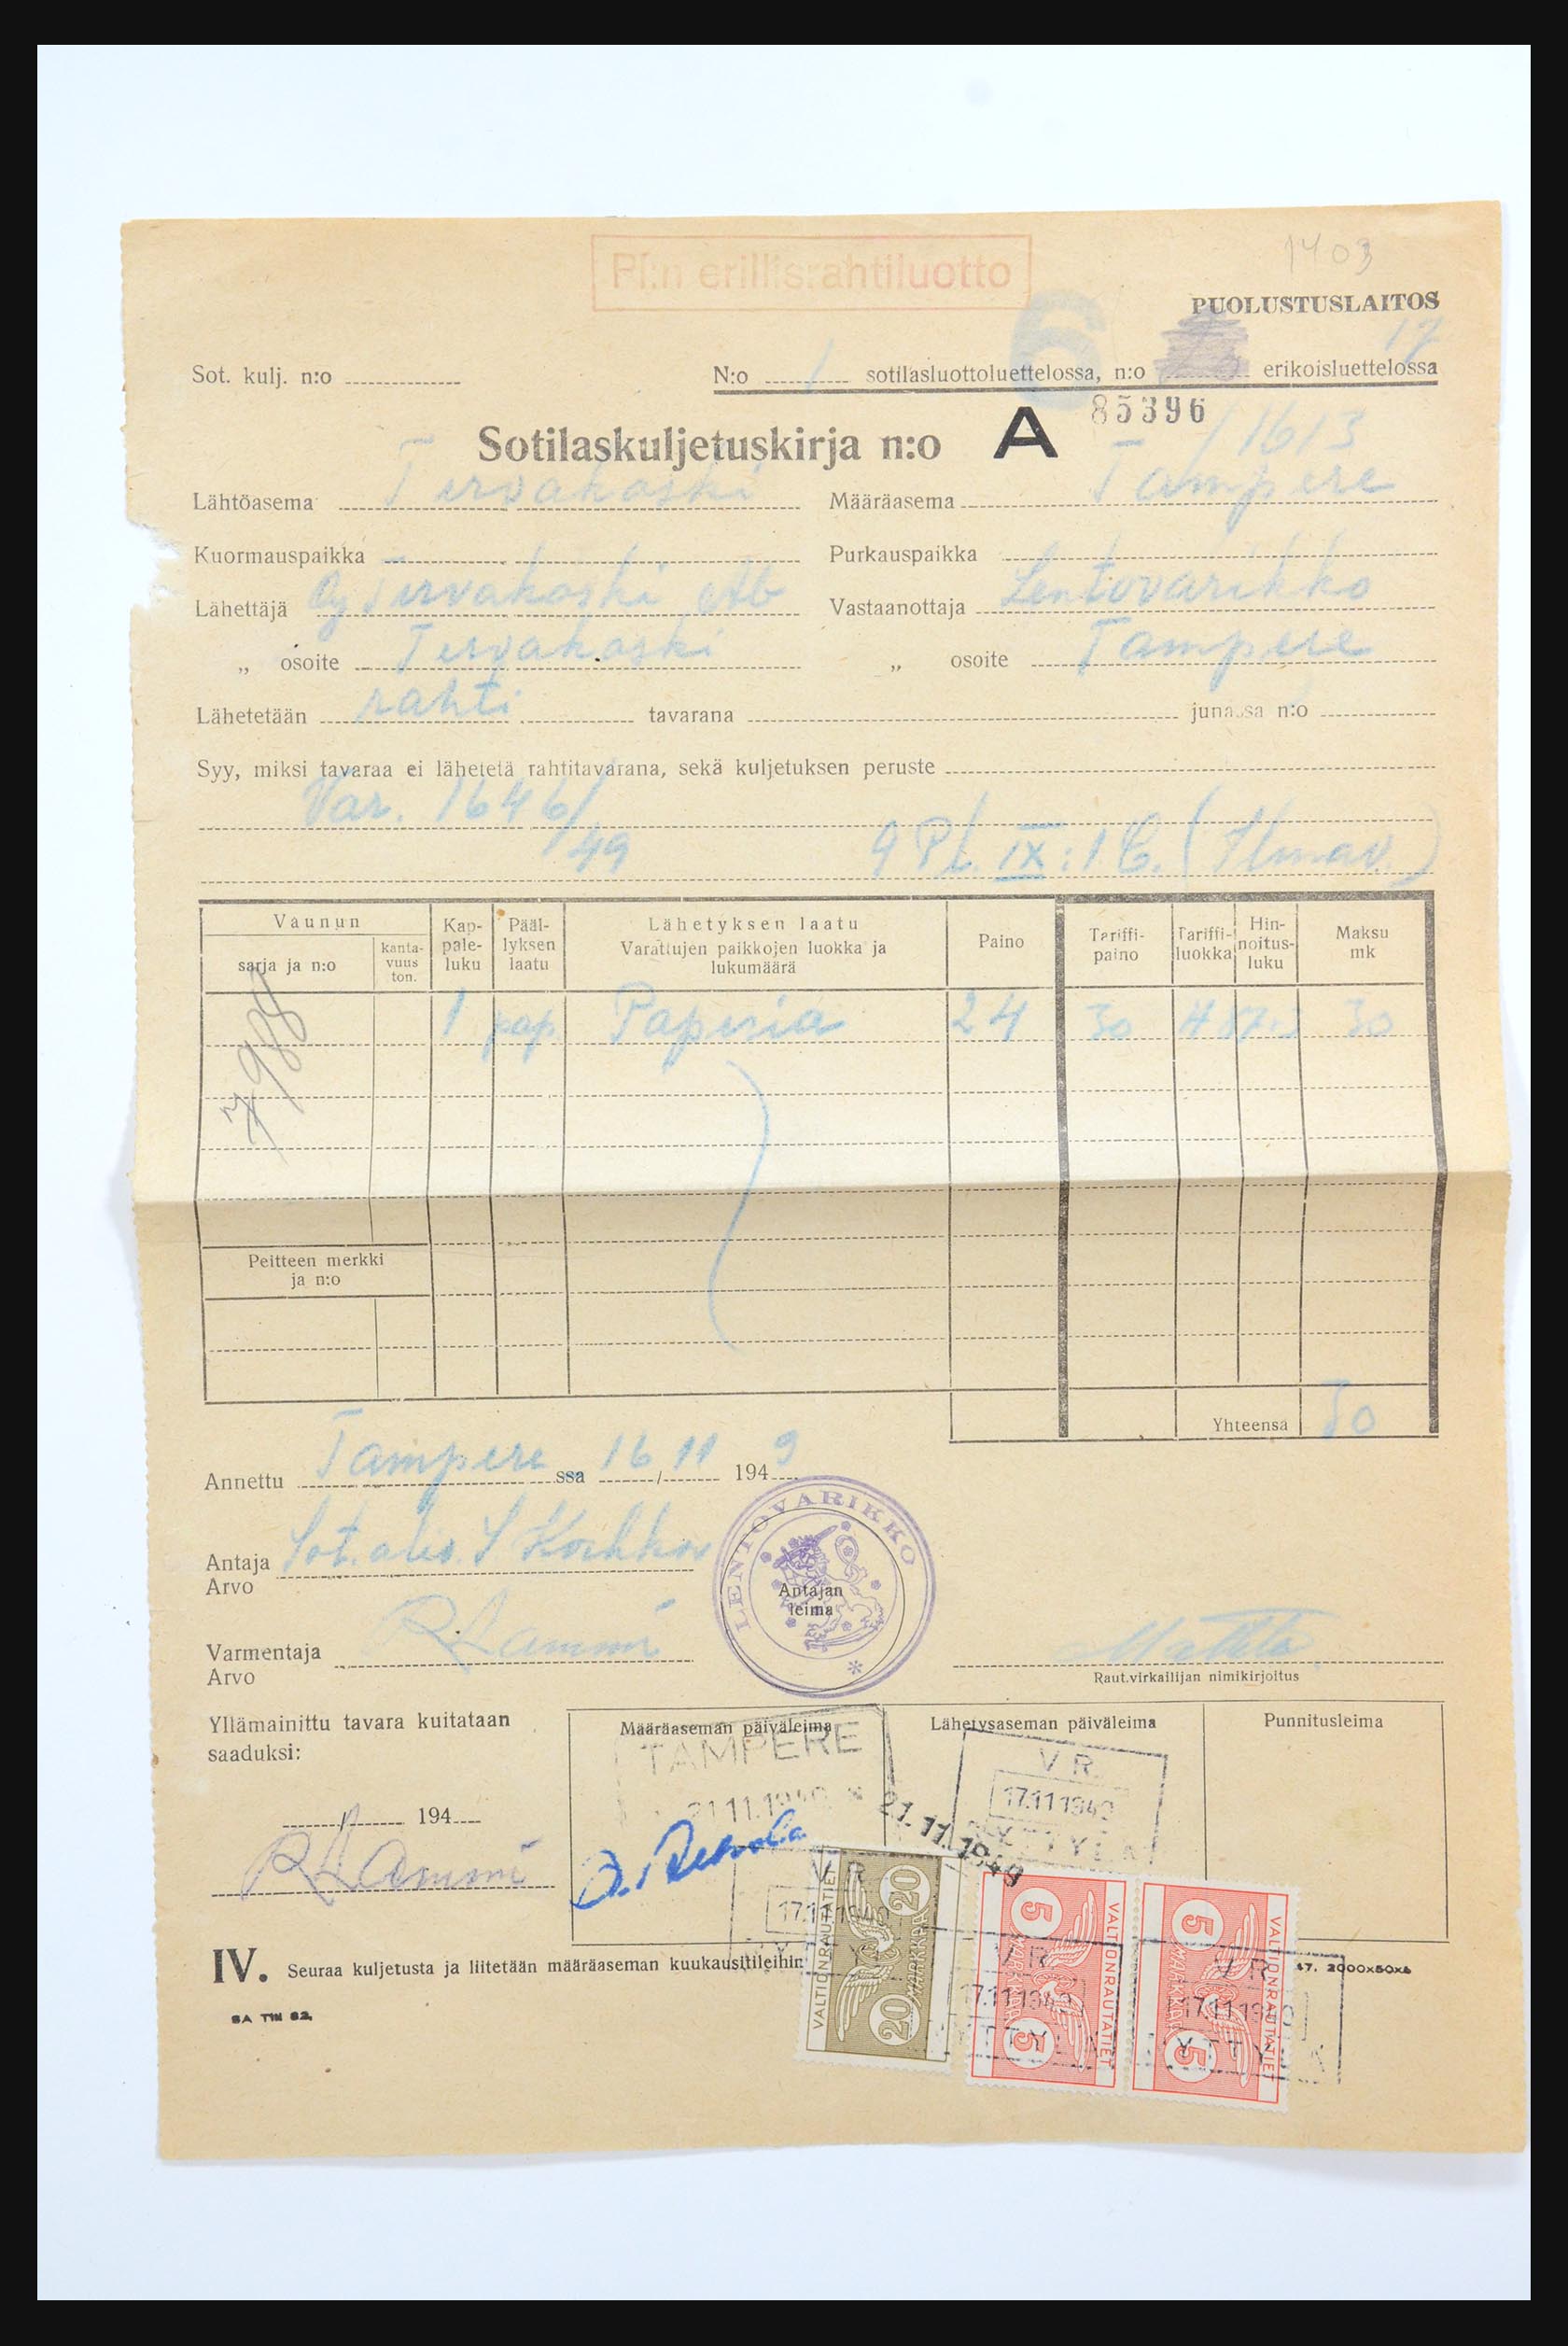 31658 108 - 31658 Finland brieven 1833-1960.